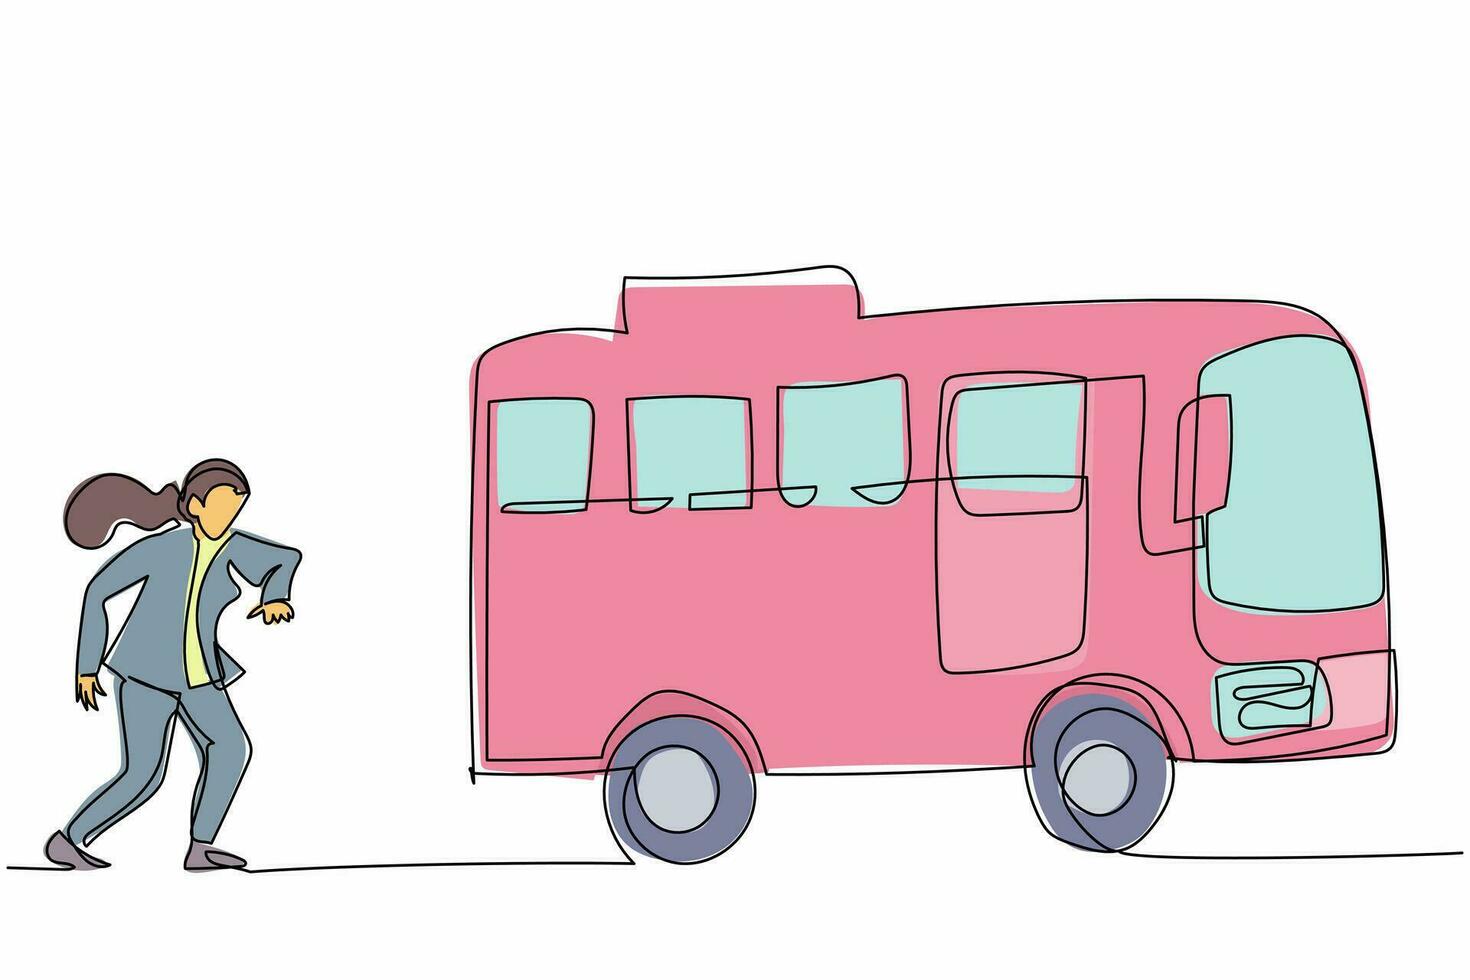 la donna d'affari di disegno continuo di una linea corre a caccia di cercare di prendere l'autobus. affrettati a correre per prendere il trasporto, veicolo pubblico per passeggeri. metafora aziendale. illustrazione grafica vettoriale di progettazione a linea singola